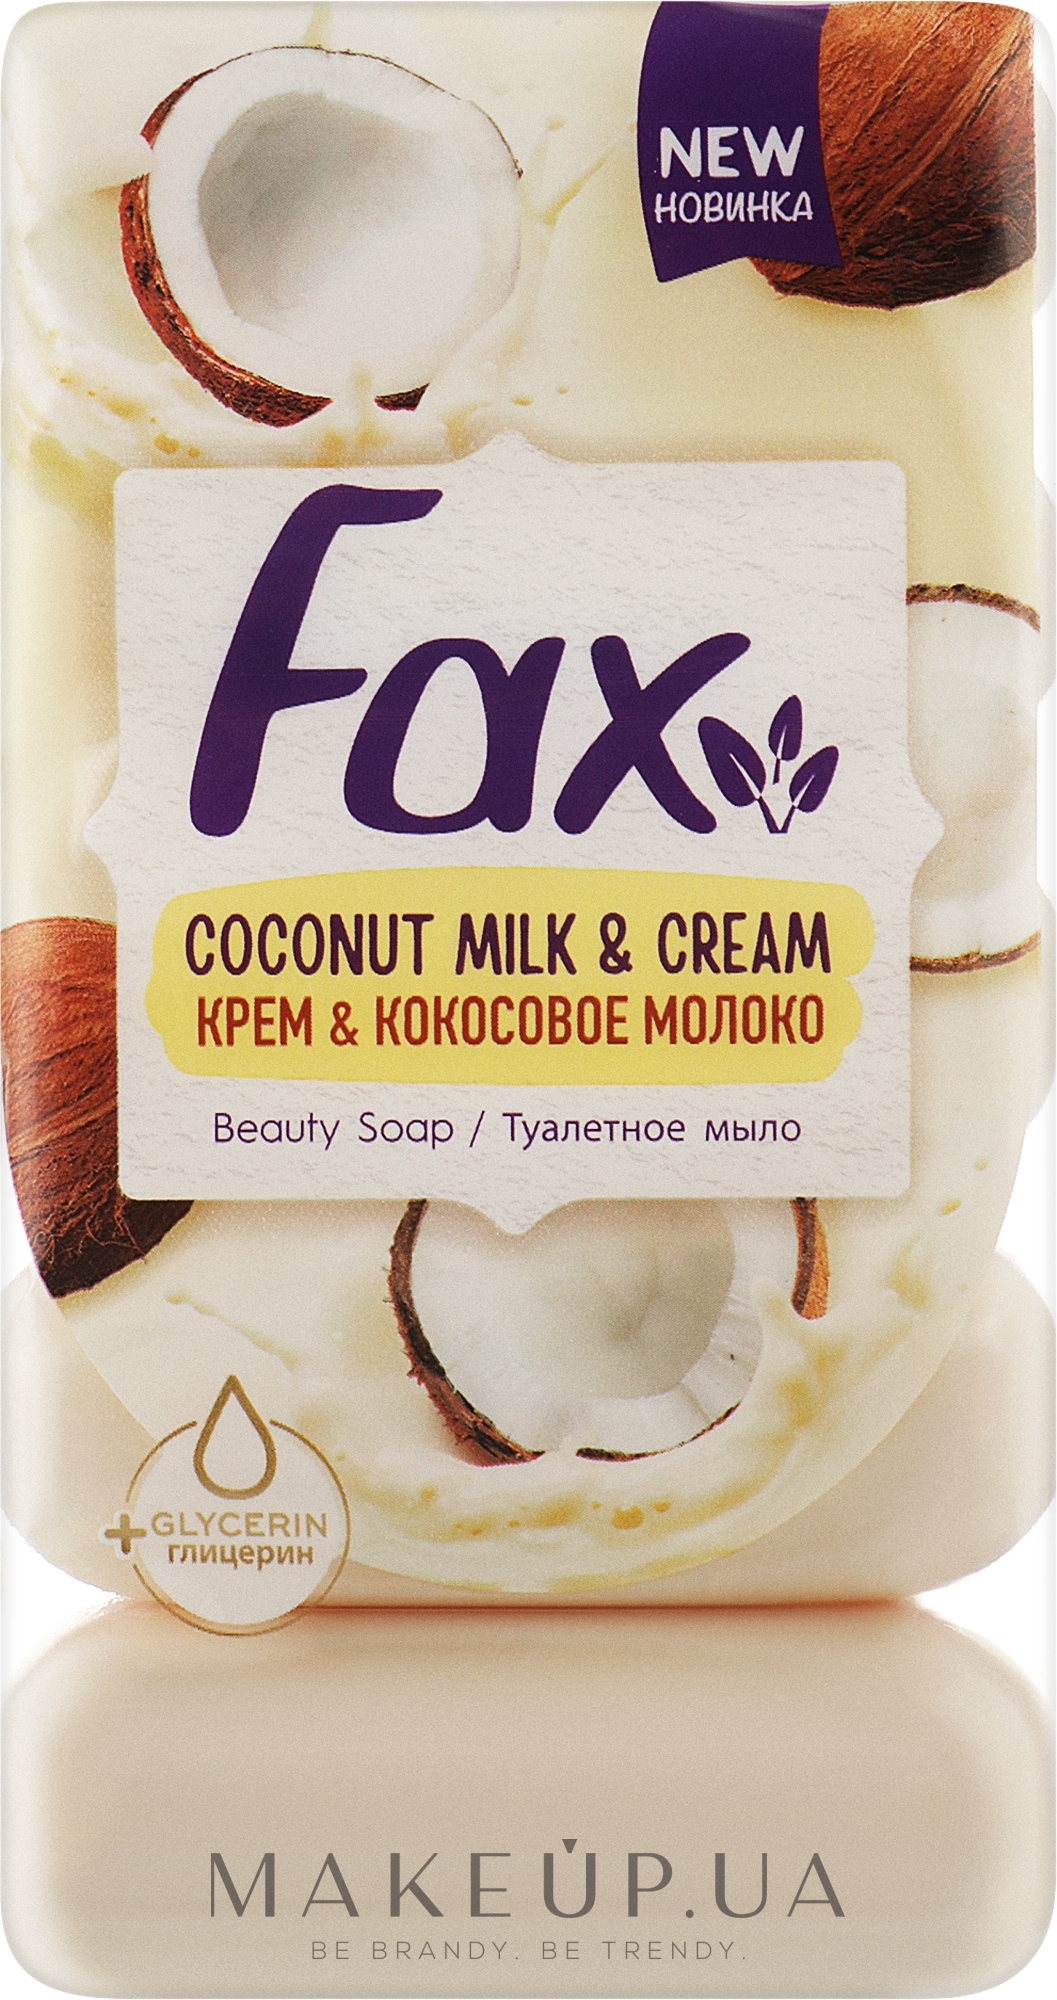 Туалетное мыло "Крем и кокосовое молоко" - Fax Coconut Milk & Cream Beauty Soap (экопак) — фото 5x70g